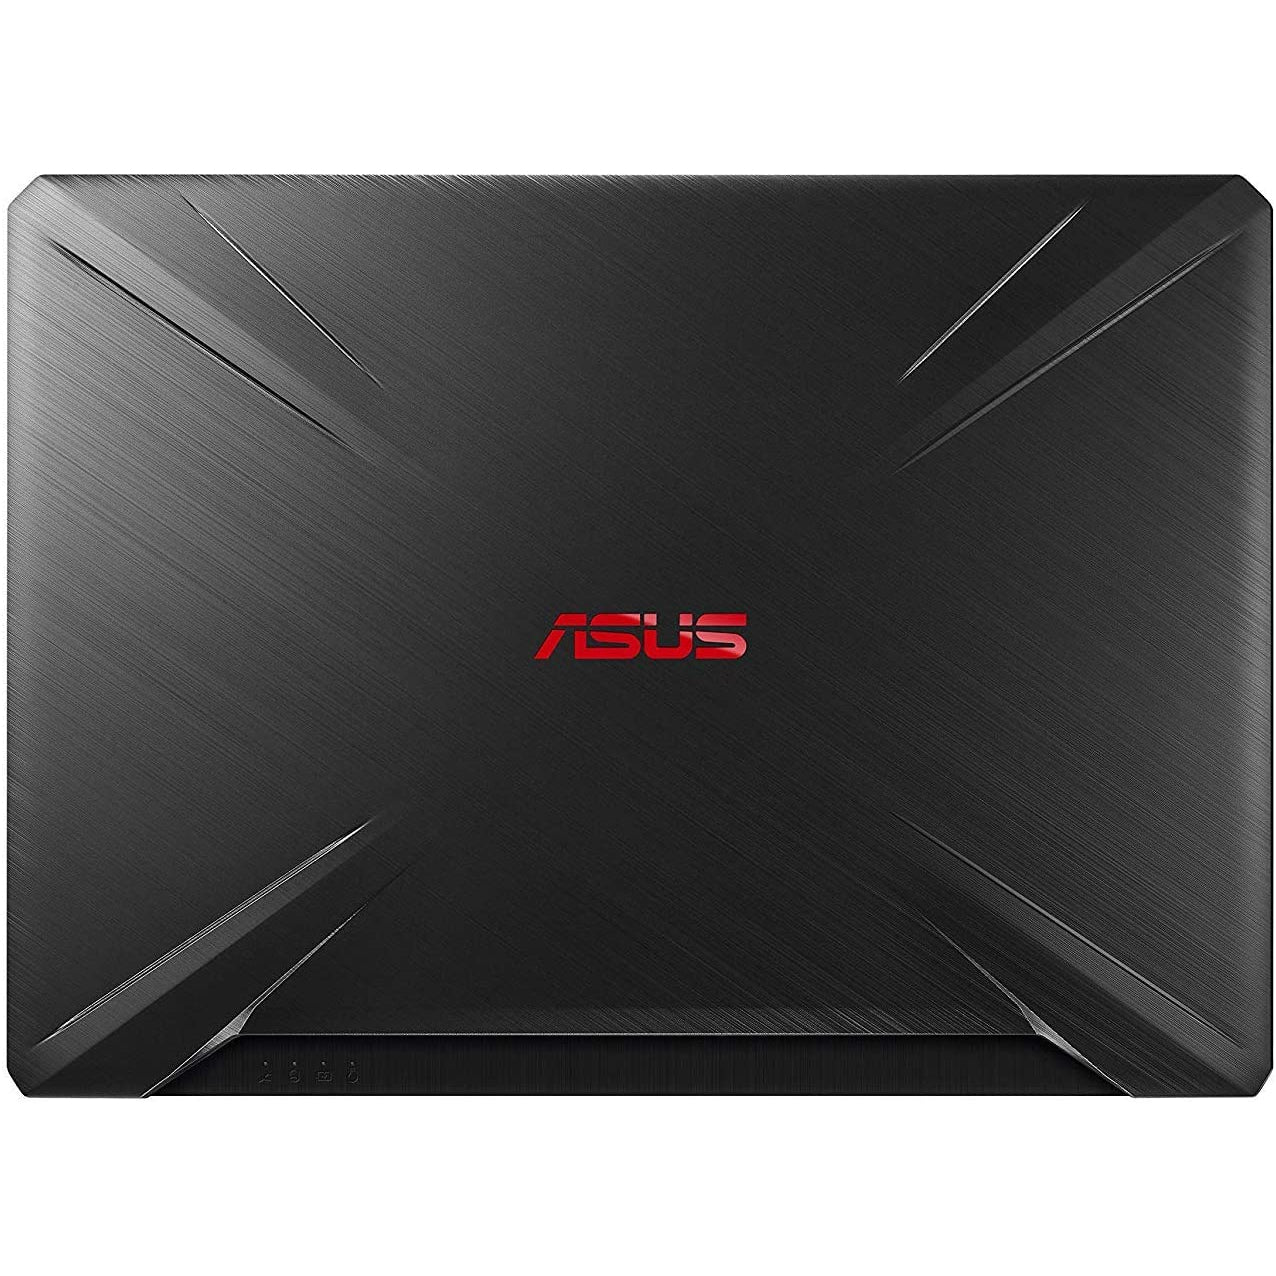 ASUS FX505DY-AL006T 15.6" Gaming Laptop, AMD Ryzen 5, 8GB RAM, 1TB HDD, Black